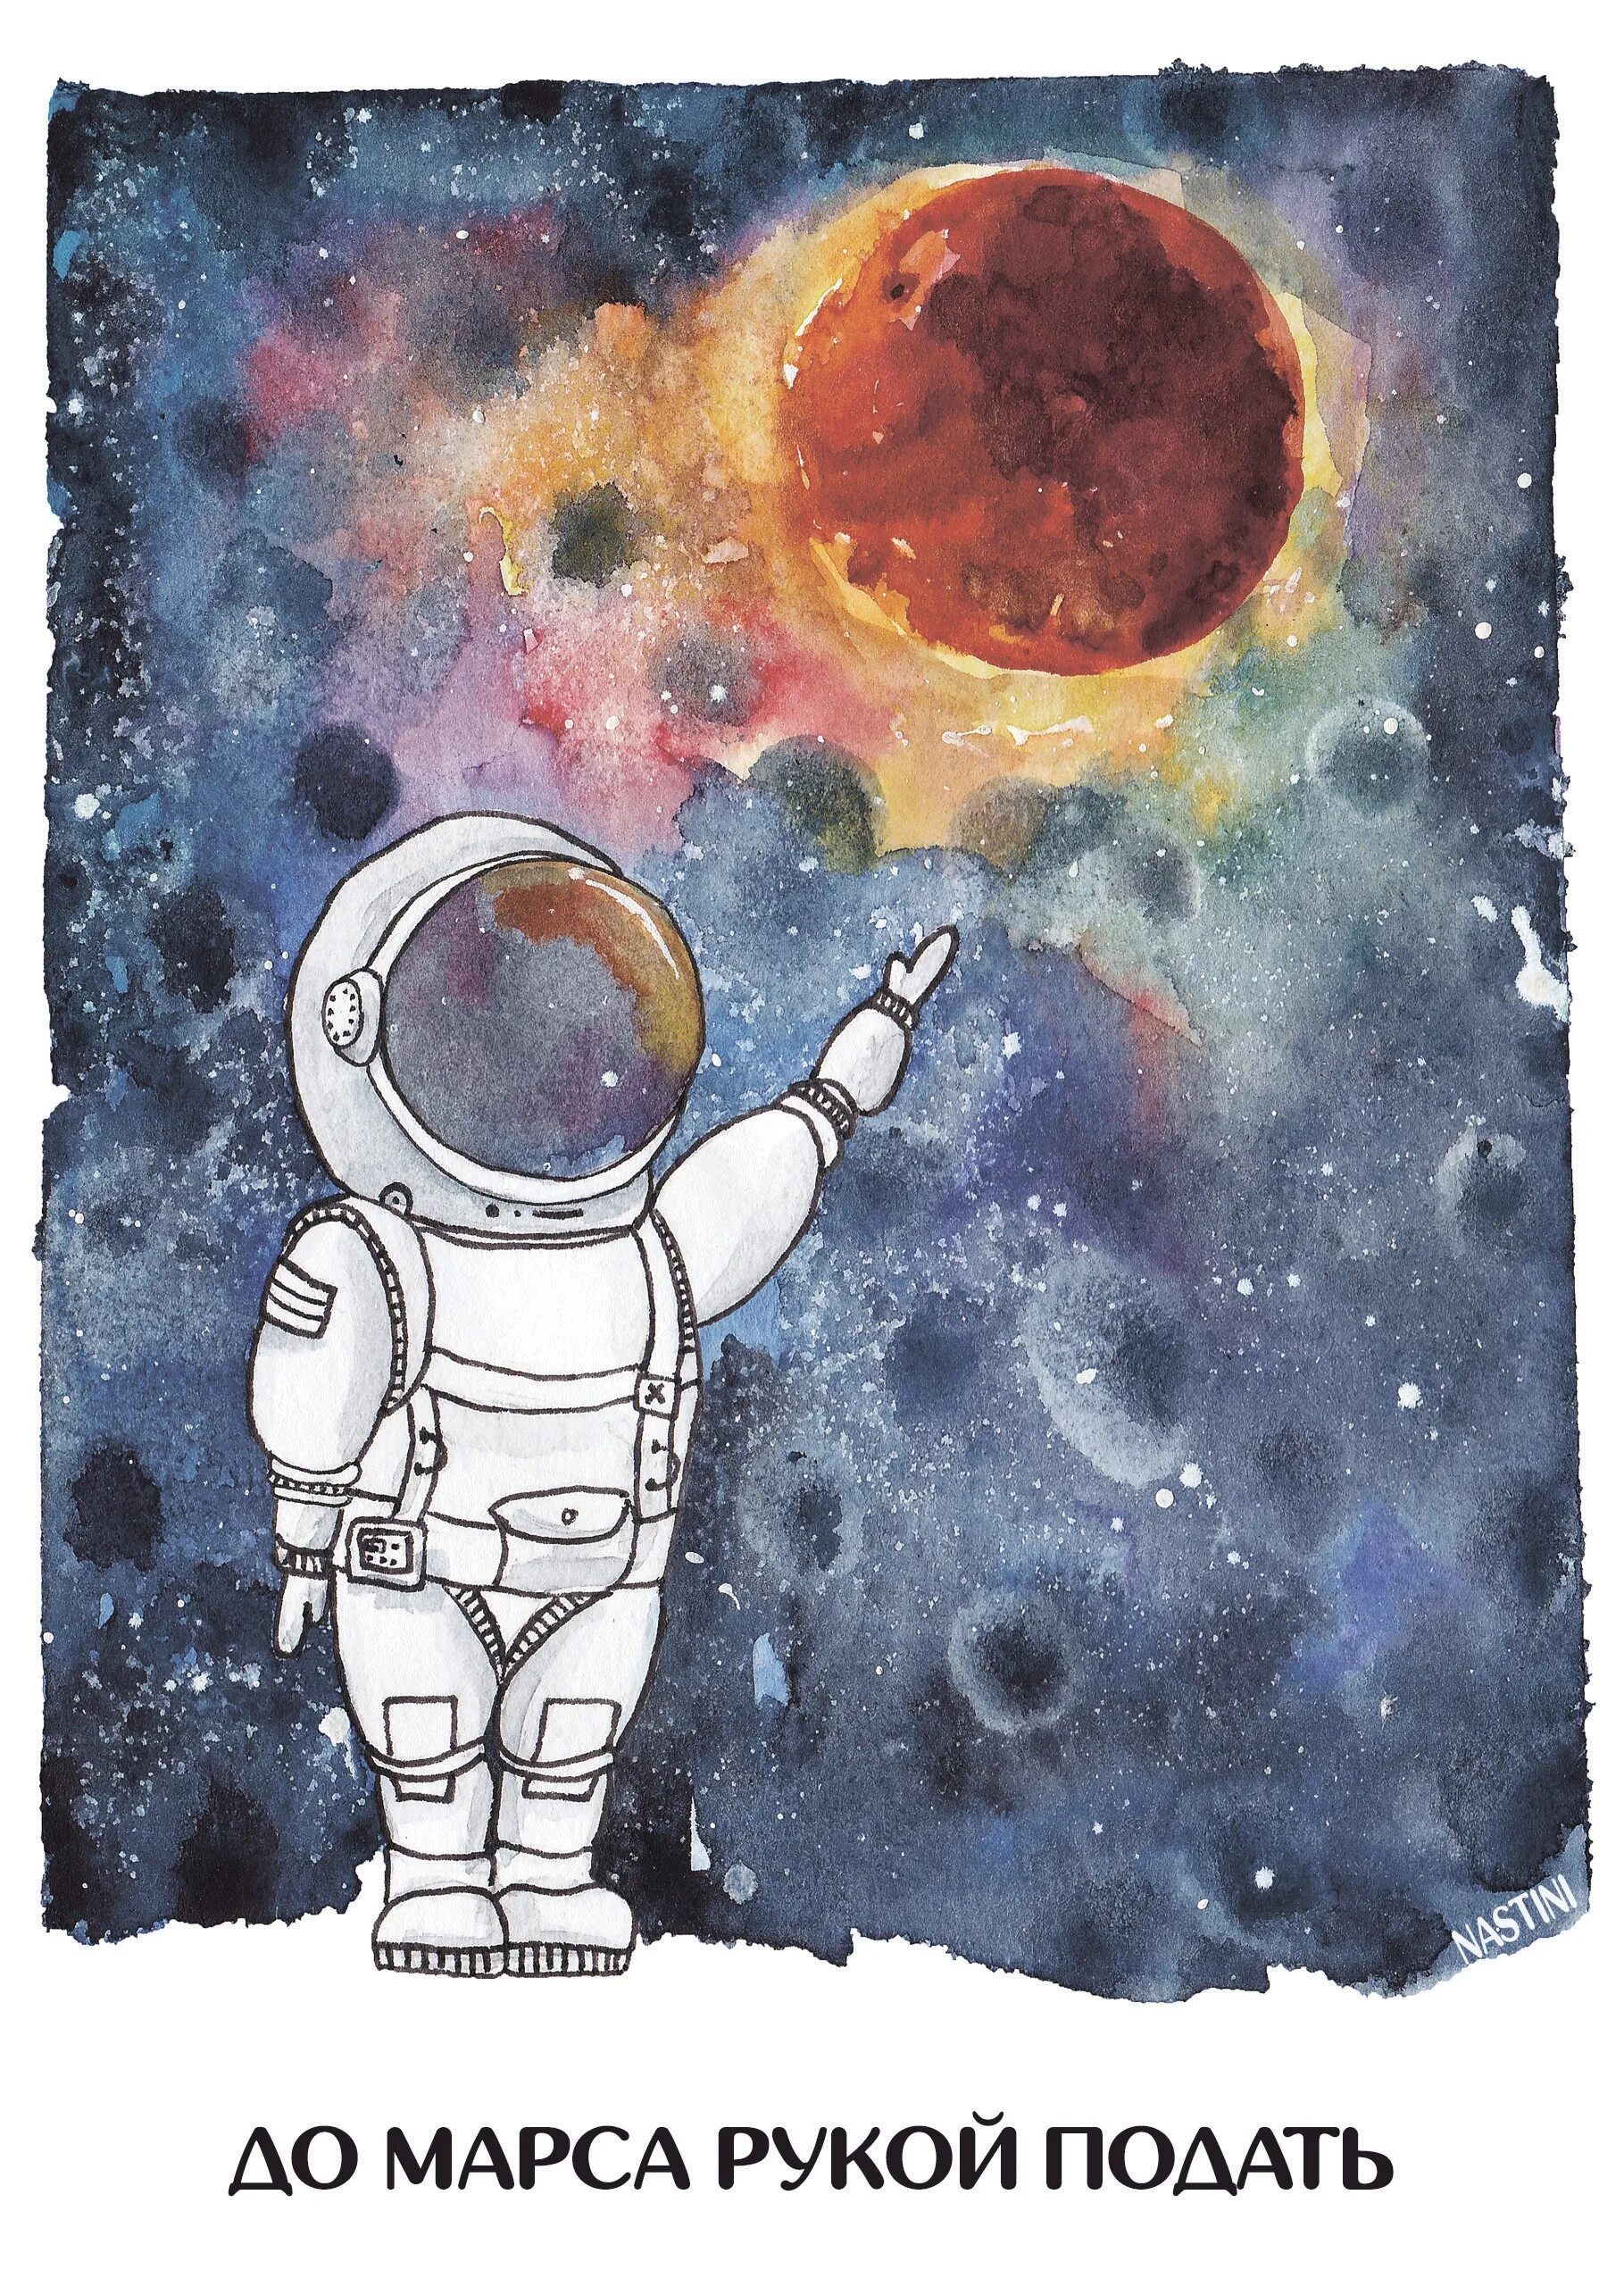 Рисунок на тему космонавт. Рисунок на тему космос. Рисунок на туму космас. Рисунок на космическую тему. Рисунок ко Дню космонавтики.